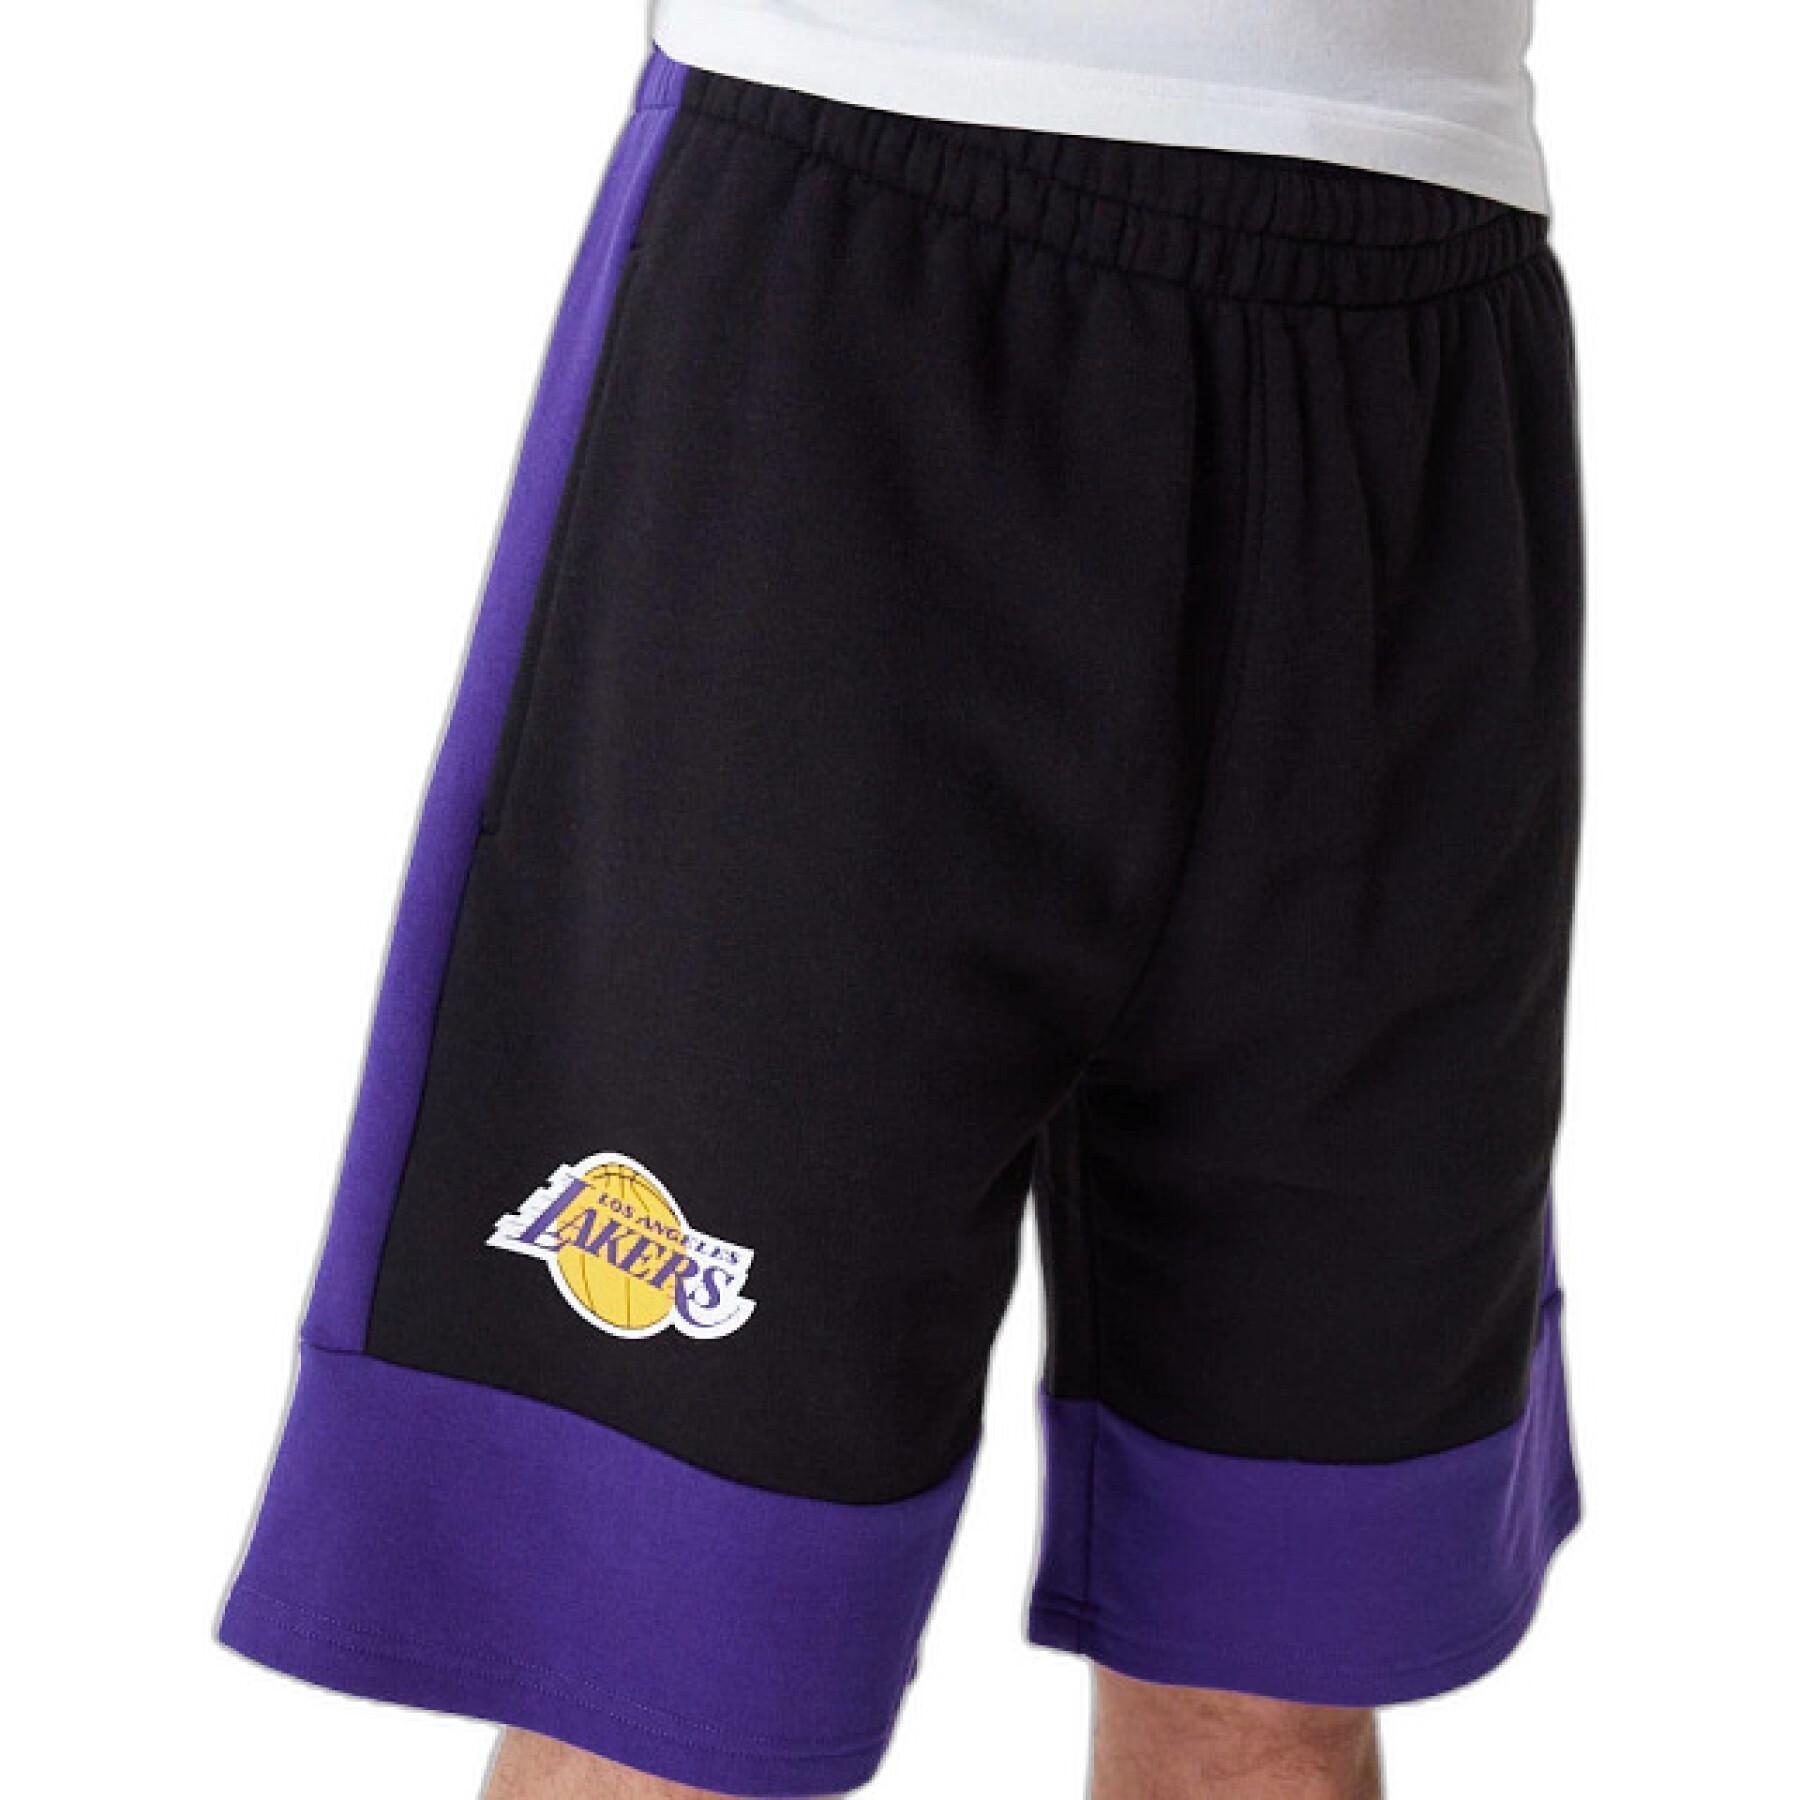 Gekleurde shorts Los Angeles Lakers